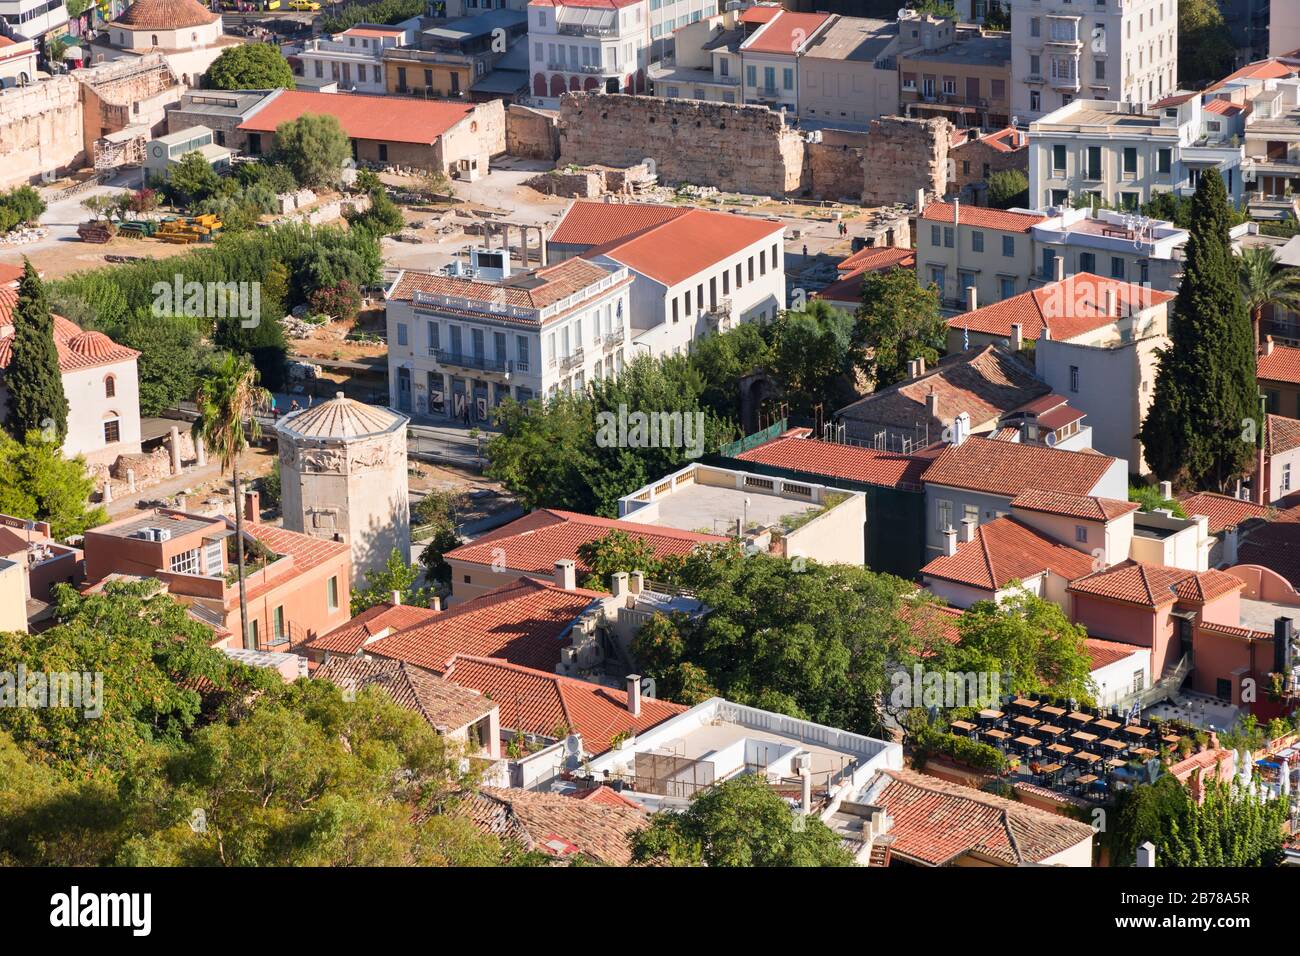 Blick auf Athen von der Akropolis. Berühmte Orte in Athen - Hauptstadt Griechenlands. Antike Denkmäler. Stockfoto